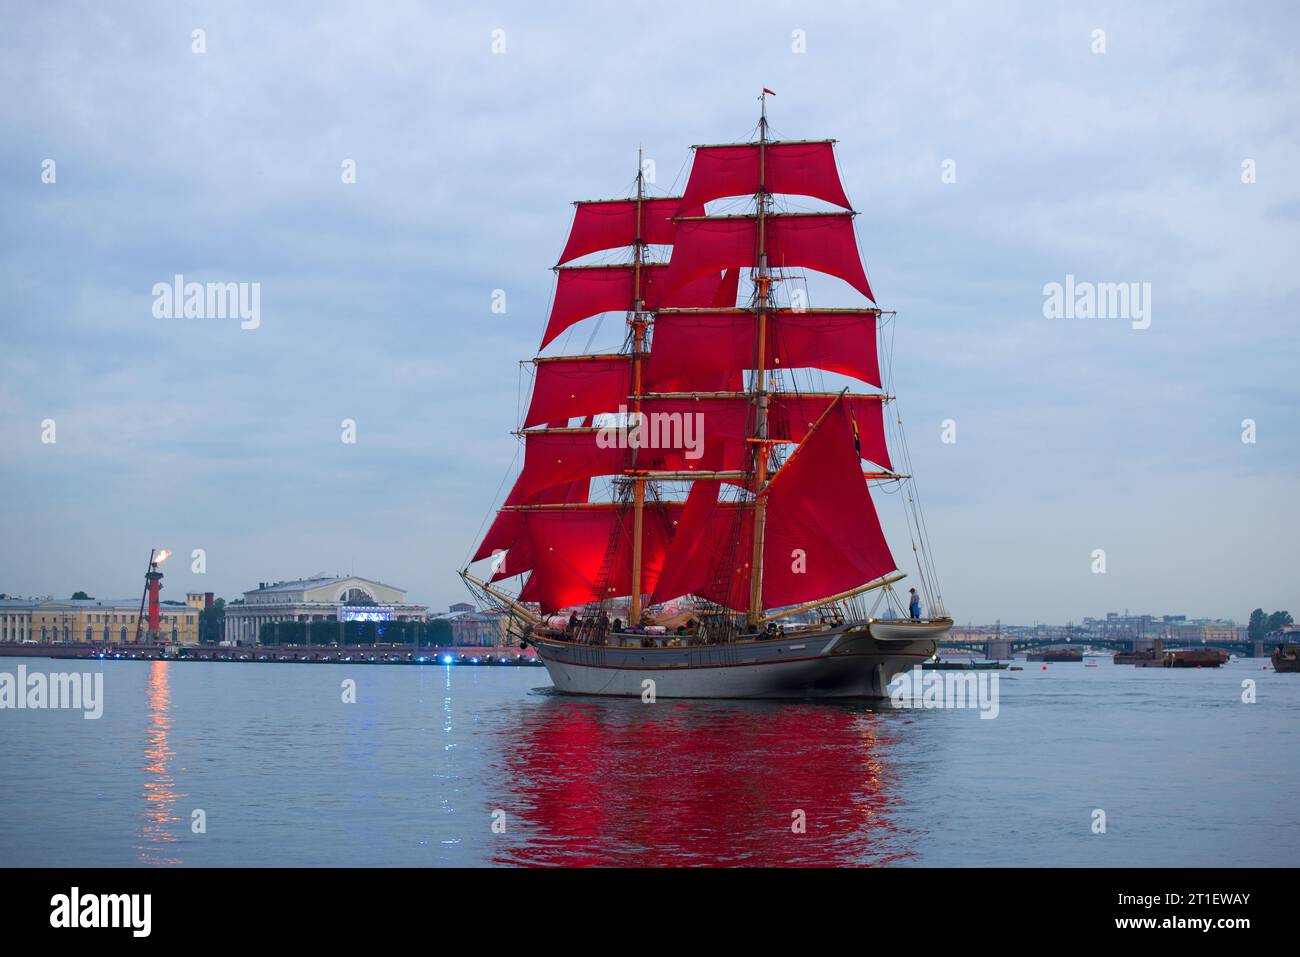 SANKT PETERSBURG, RUSSLAND - 21. JUNI 2018: Ein Segelboot mit scharlachroten Segeln vor dem Hintergrund des Pfeils der Wassiljewski-Insel. Probe für die h Stockfoto